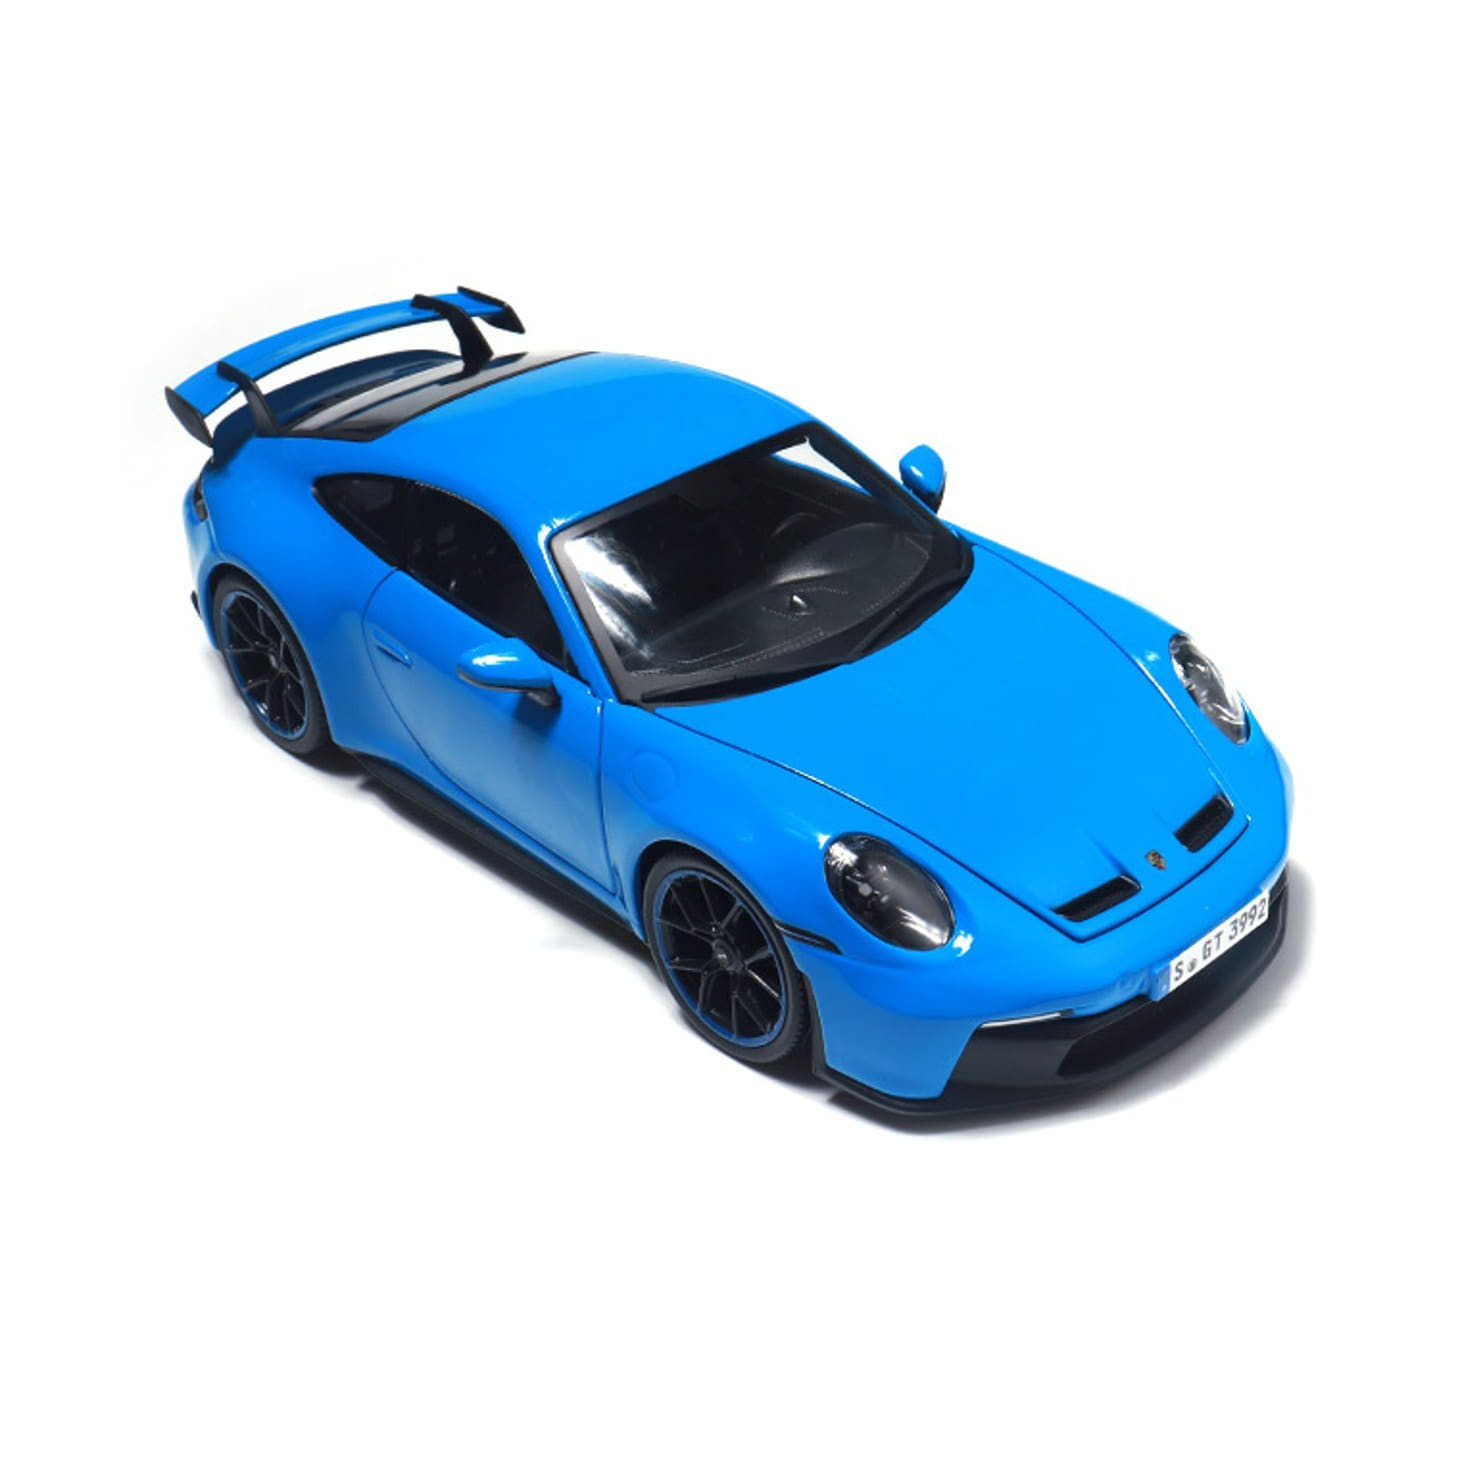 [마이스토] 1:18 포르쉐 911 GT3 블루 다이캐스트